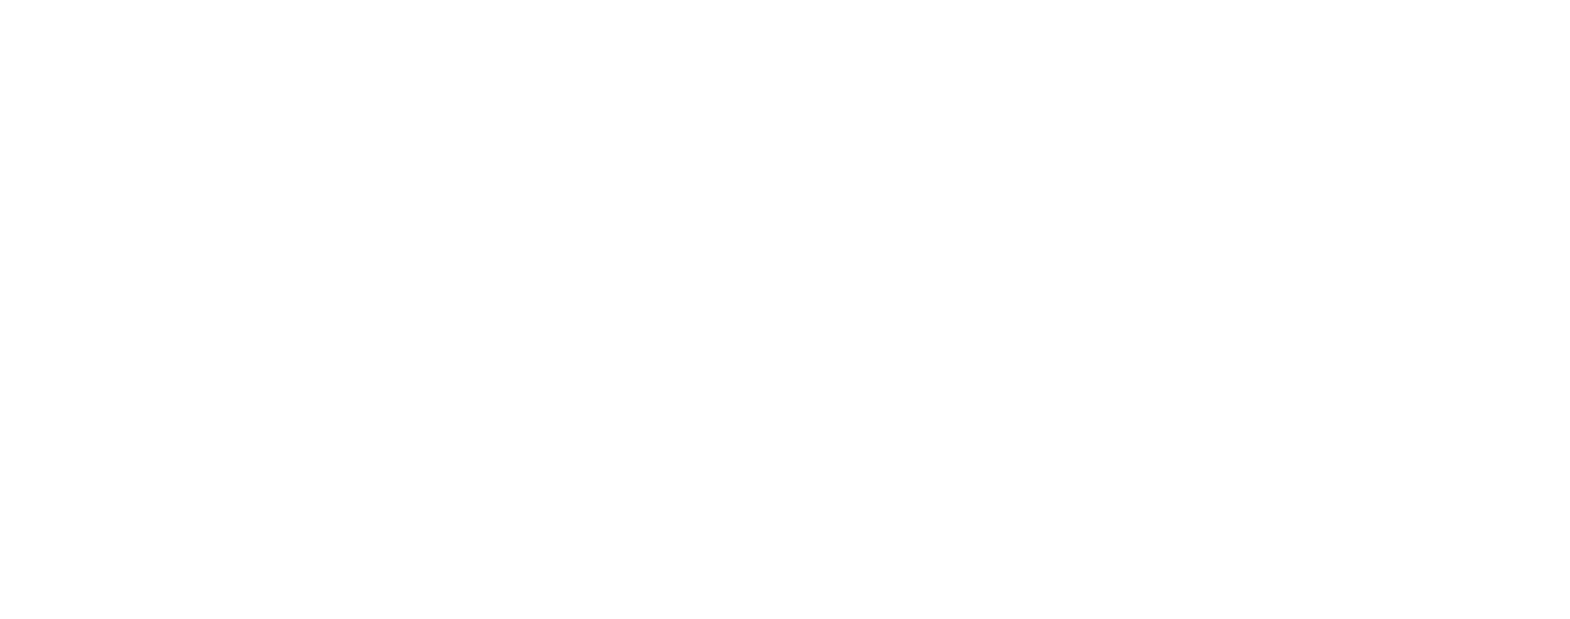 Embecta logo large for dark backgrounds (transparent PNG)